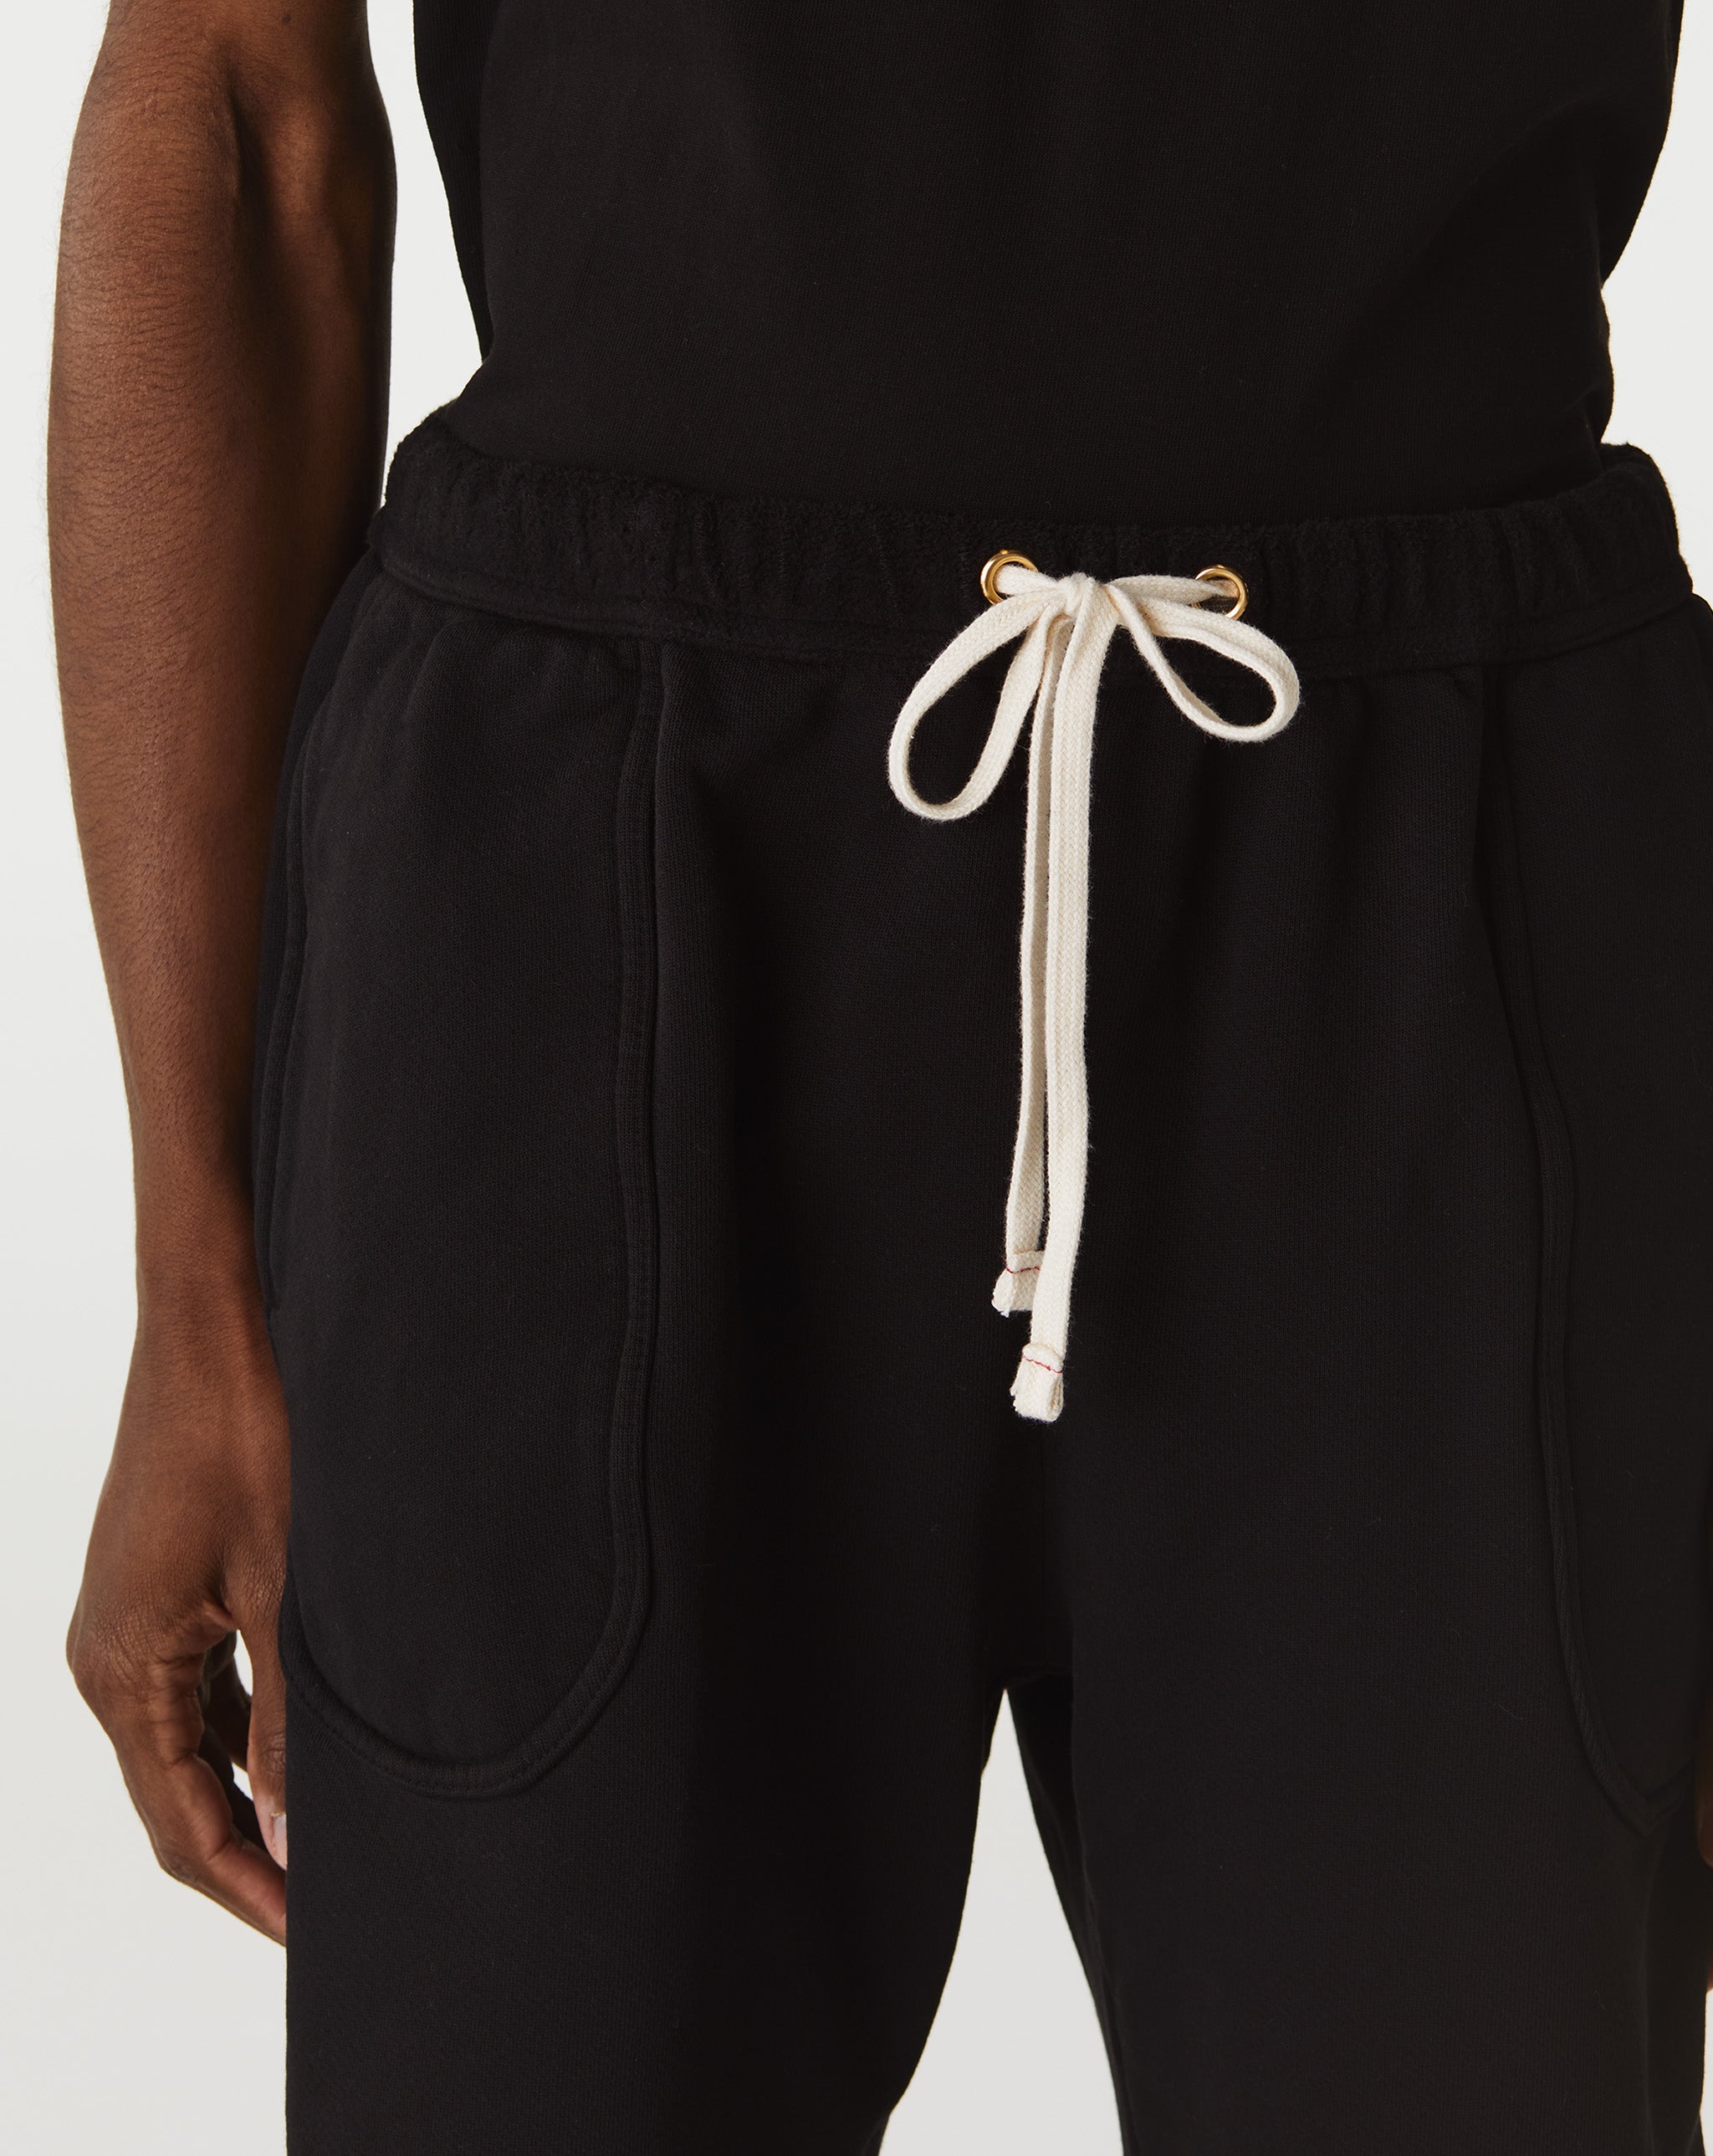 Les Tien Breacher Leather Shorts  - Cheap Urlfreeze Jordan outlet